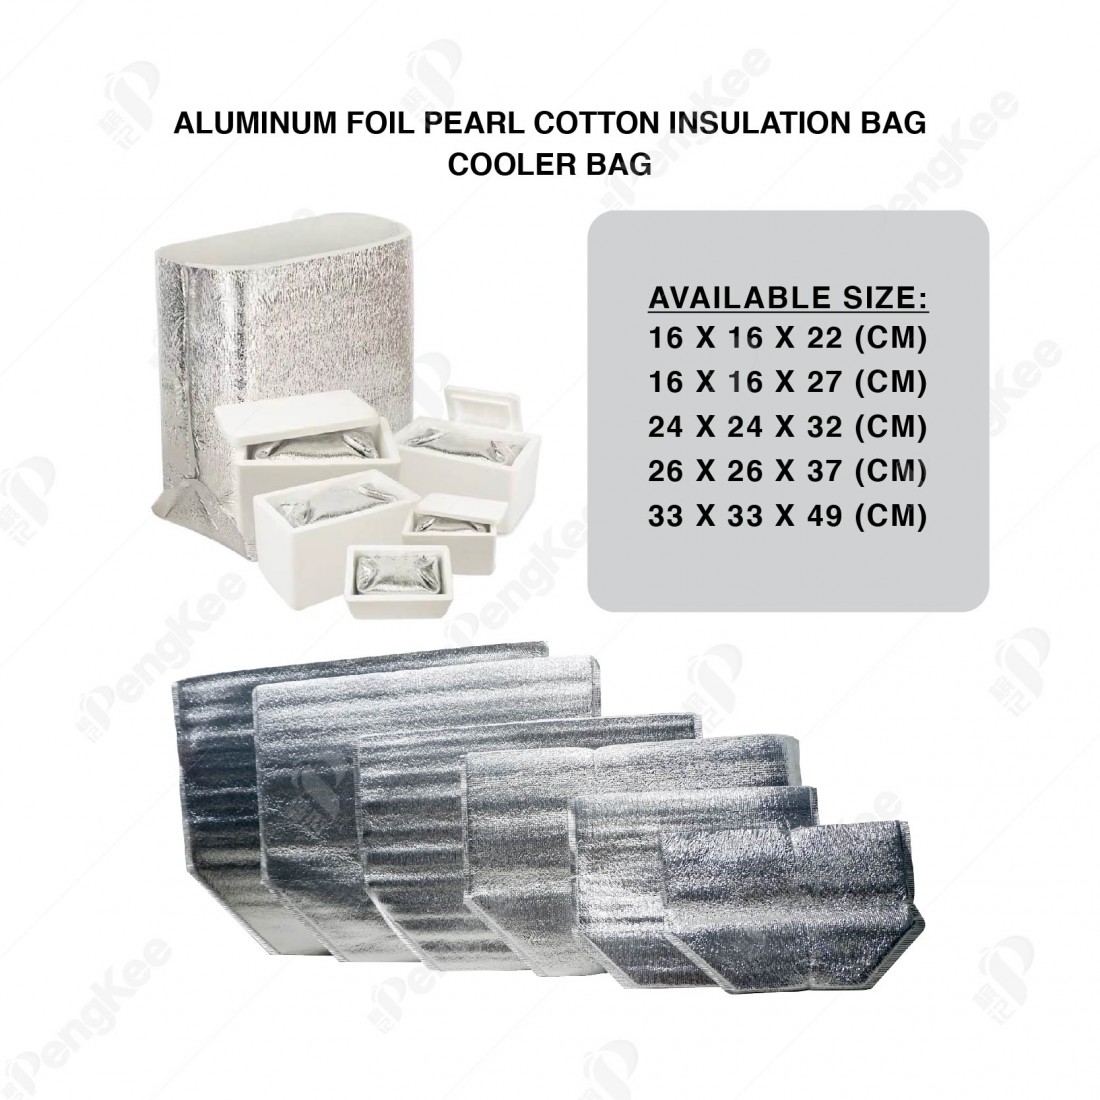 ALUMINUM FOIL PEARL COTTON INSULATION BAG (L26 * W26 * H37CM +3MM) 铝箱珍珠保温袋 (20'S)